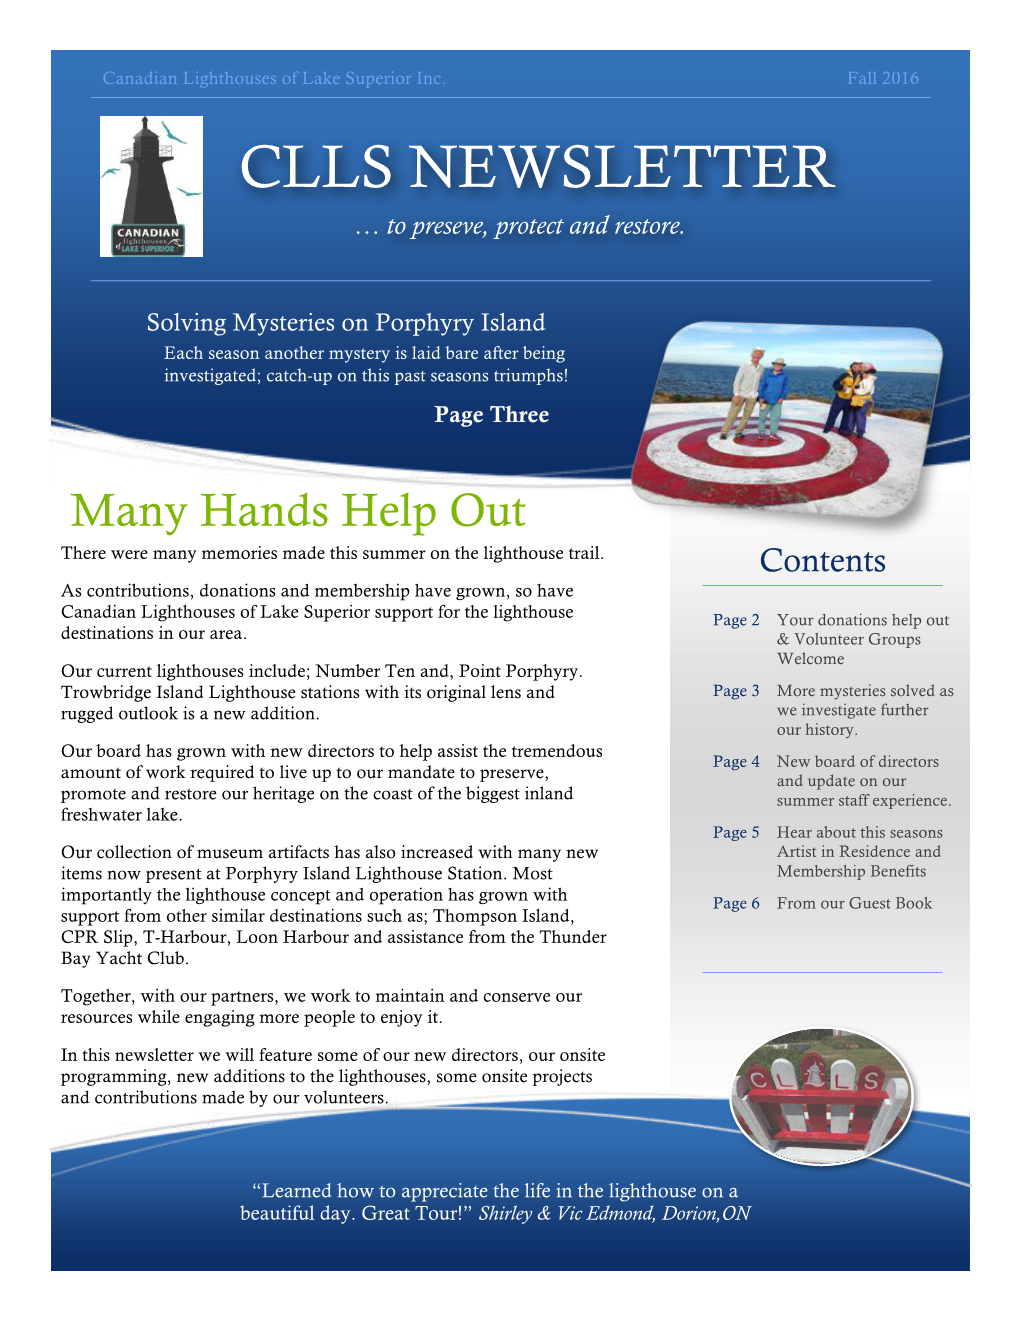 Clls Newsletter